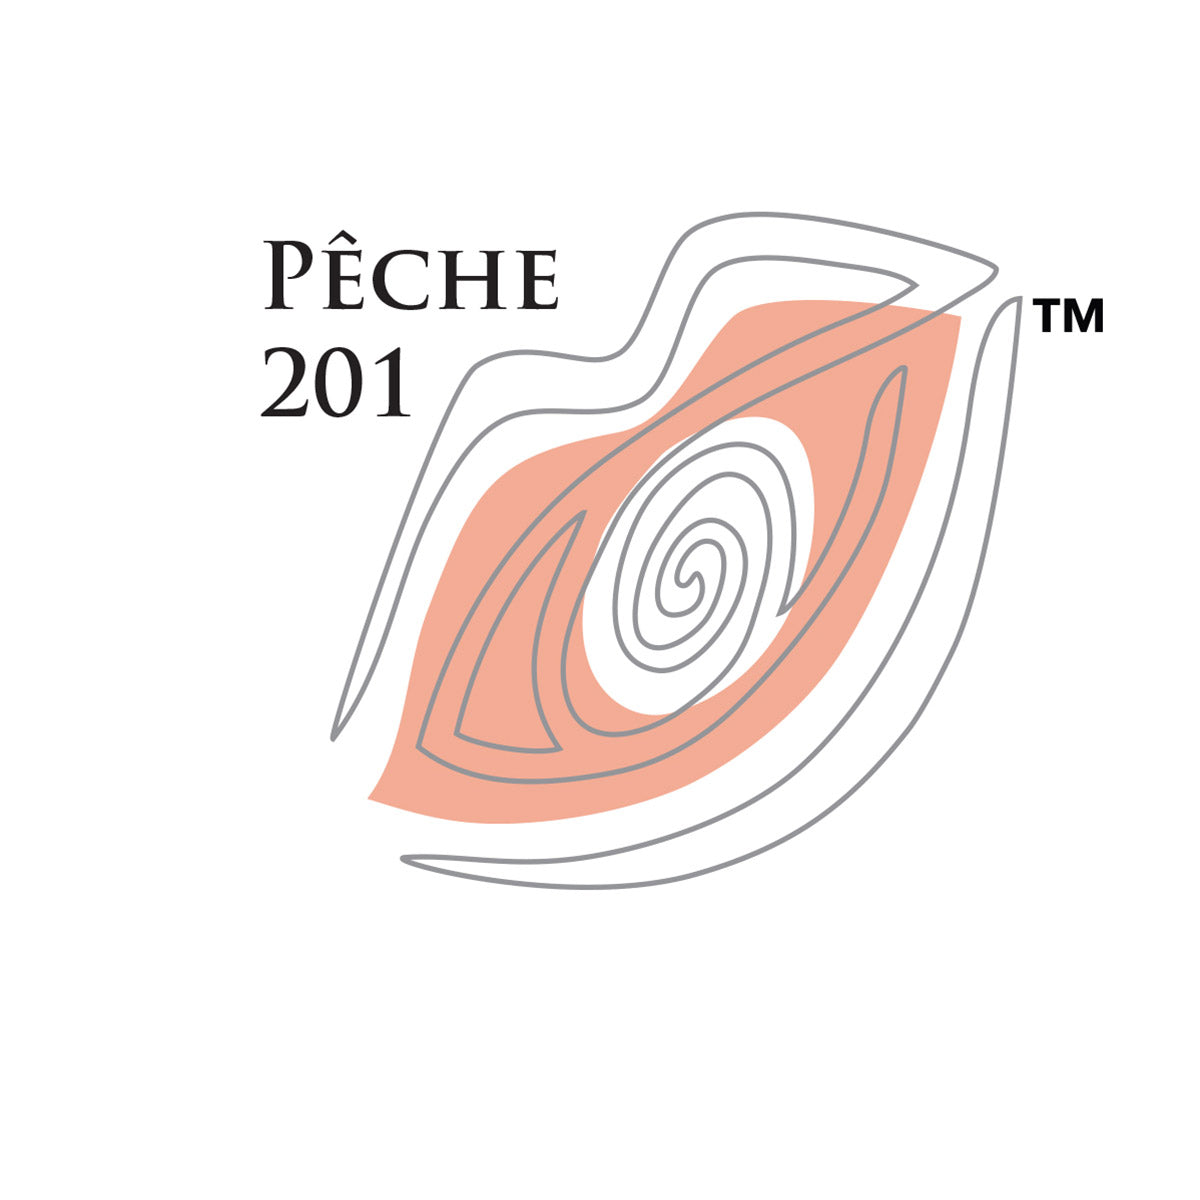 201 Pêche / Peach 20ml